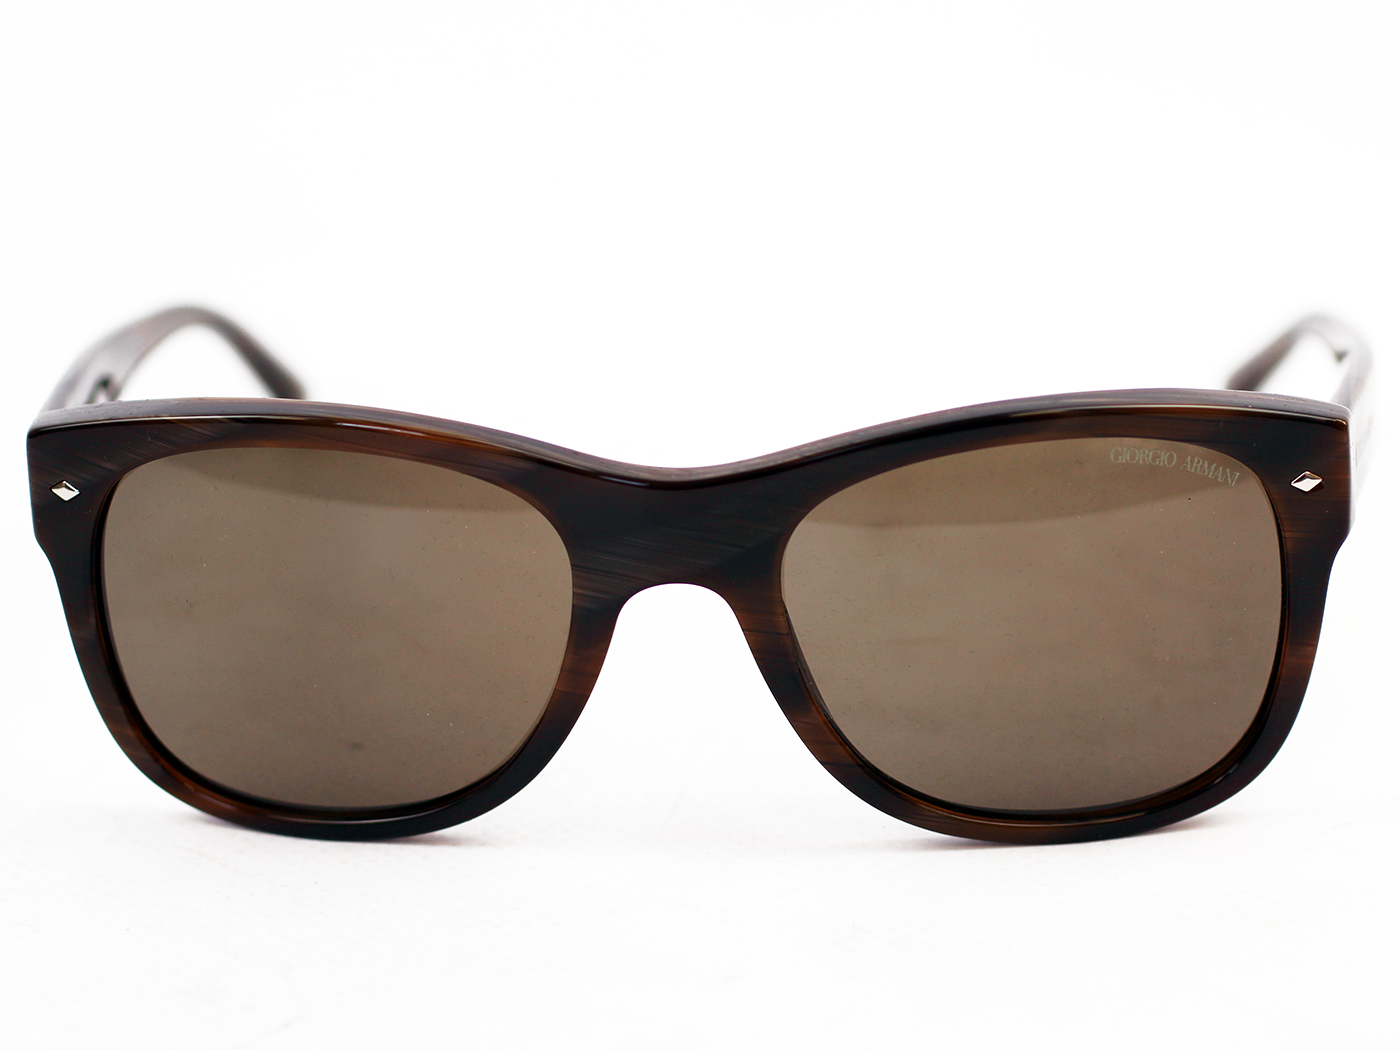 Giorgio Armani Retro Mod 50s Style Sunglasses in Brown 0AR8008